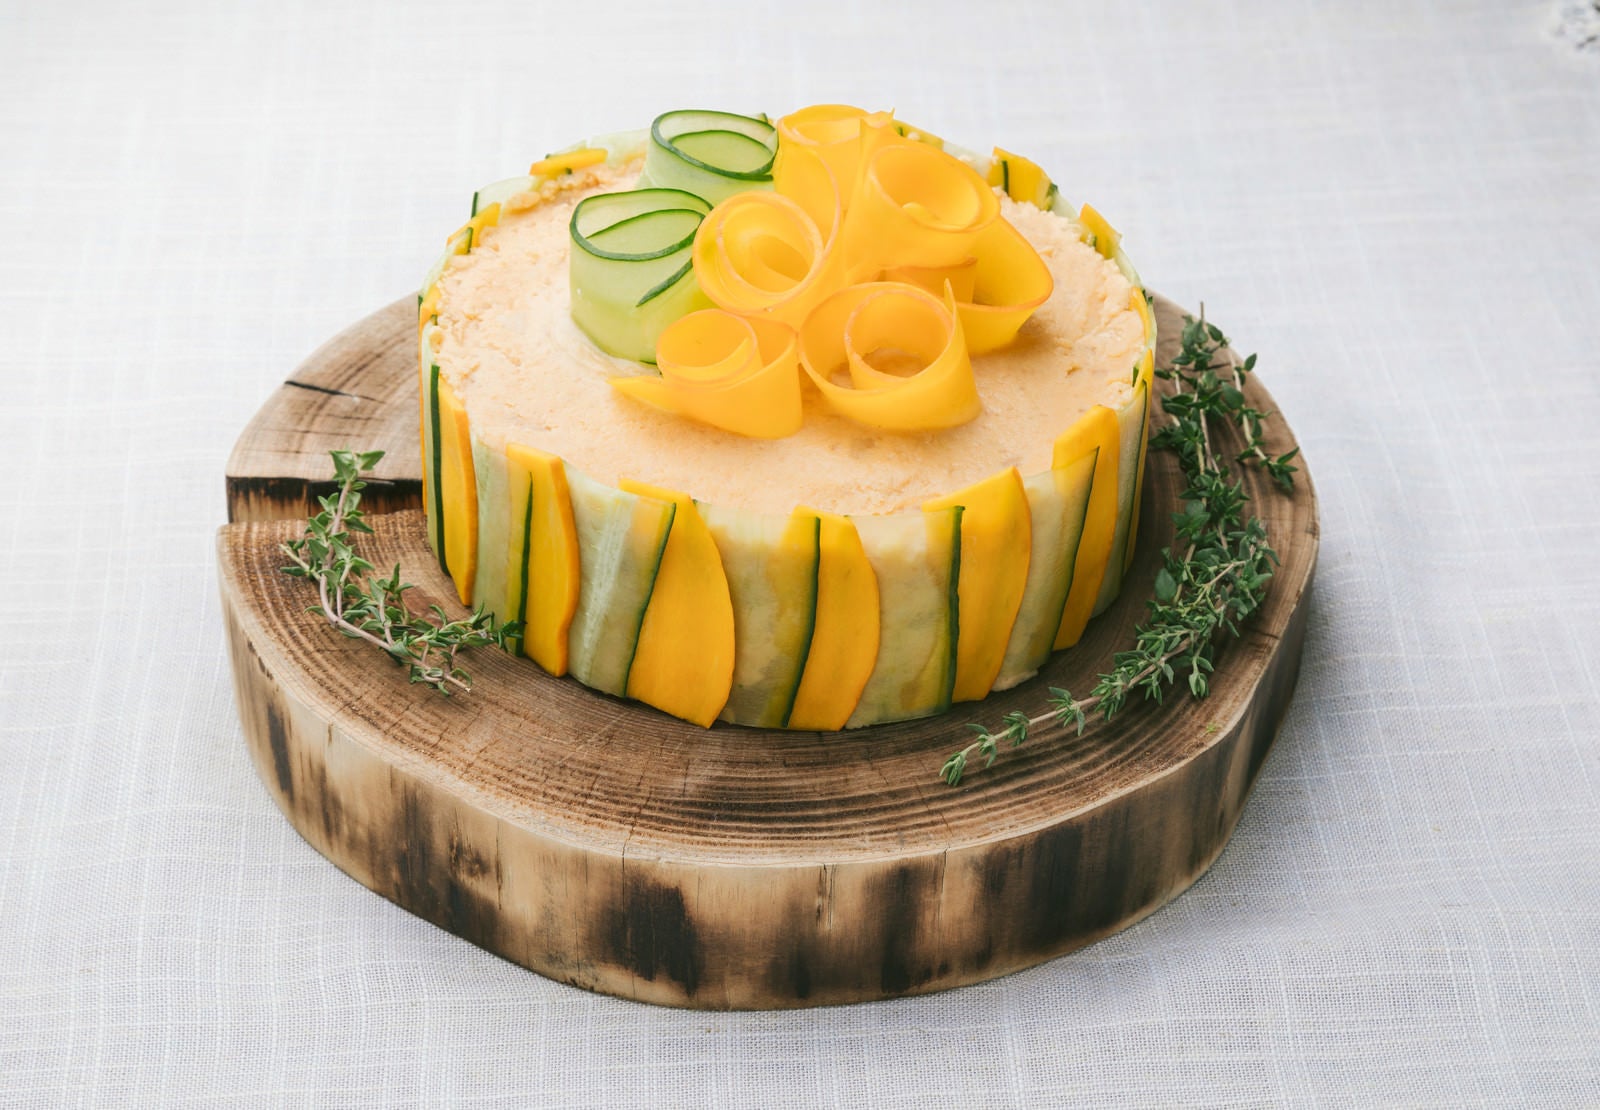 「低糖質な野菜ケーキ「ベジデコサンドケーキ」」の写真